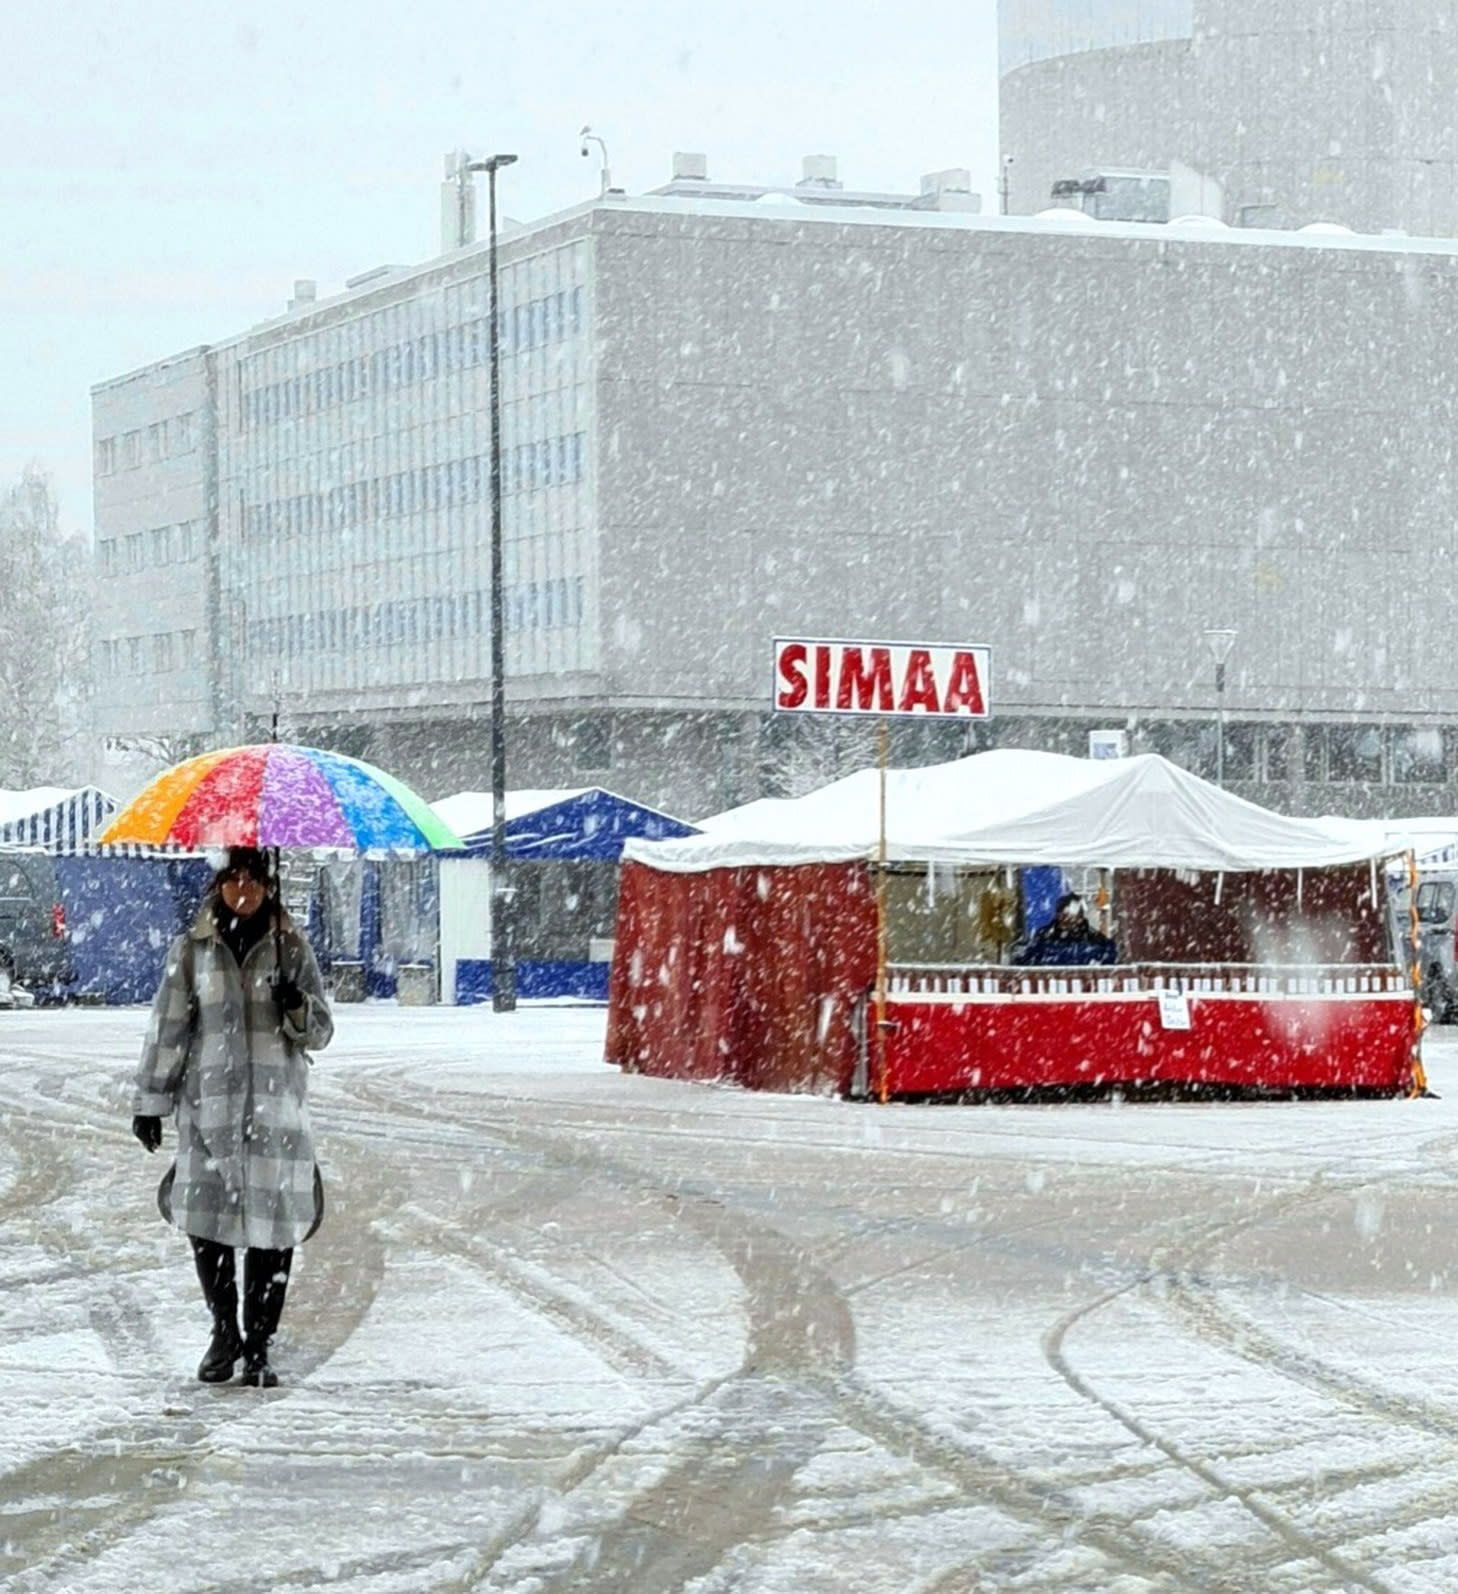 تستعد فنلندا للاحتفال بعيد العمال تقليديا ، في الصقيع والثلج